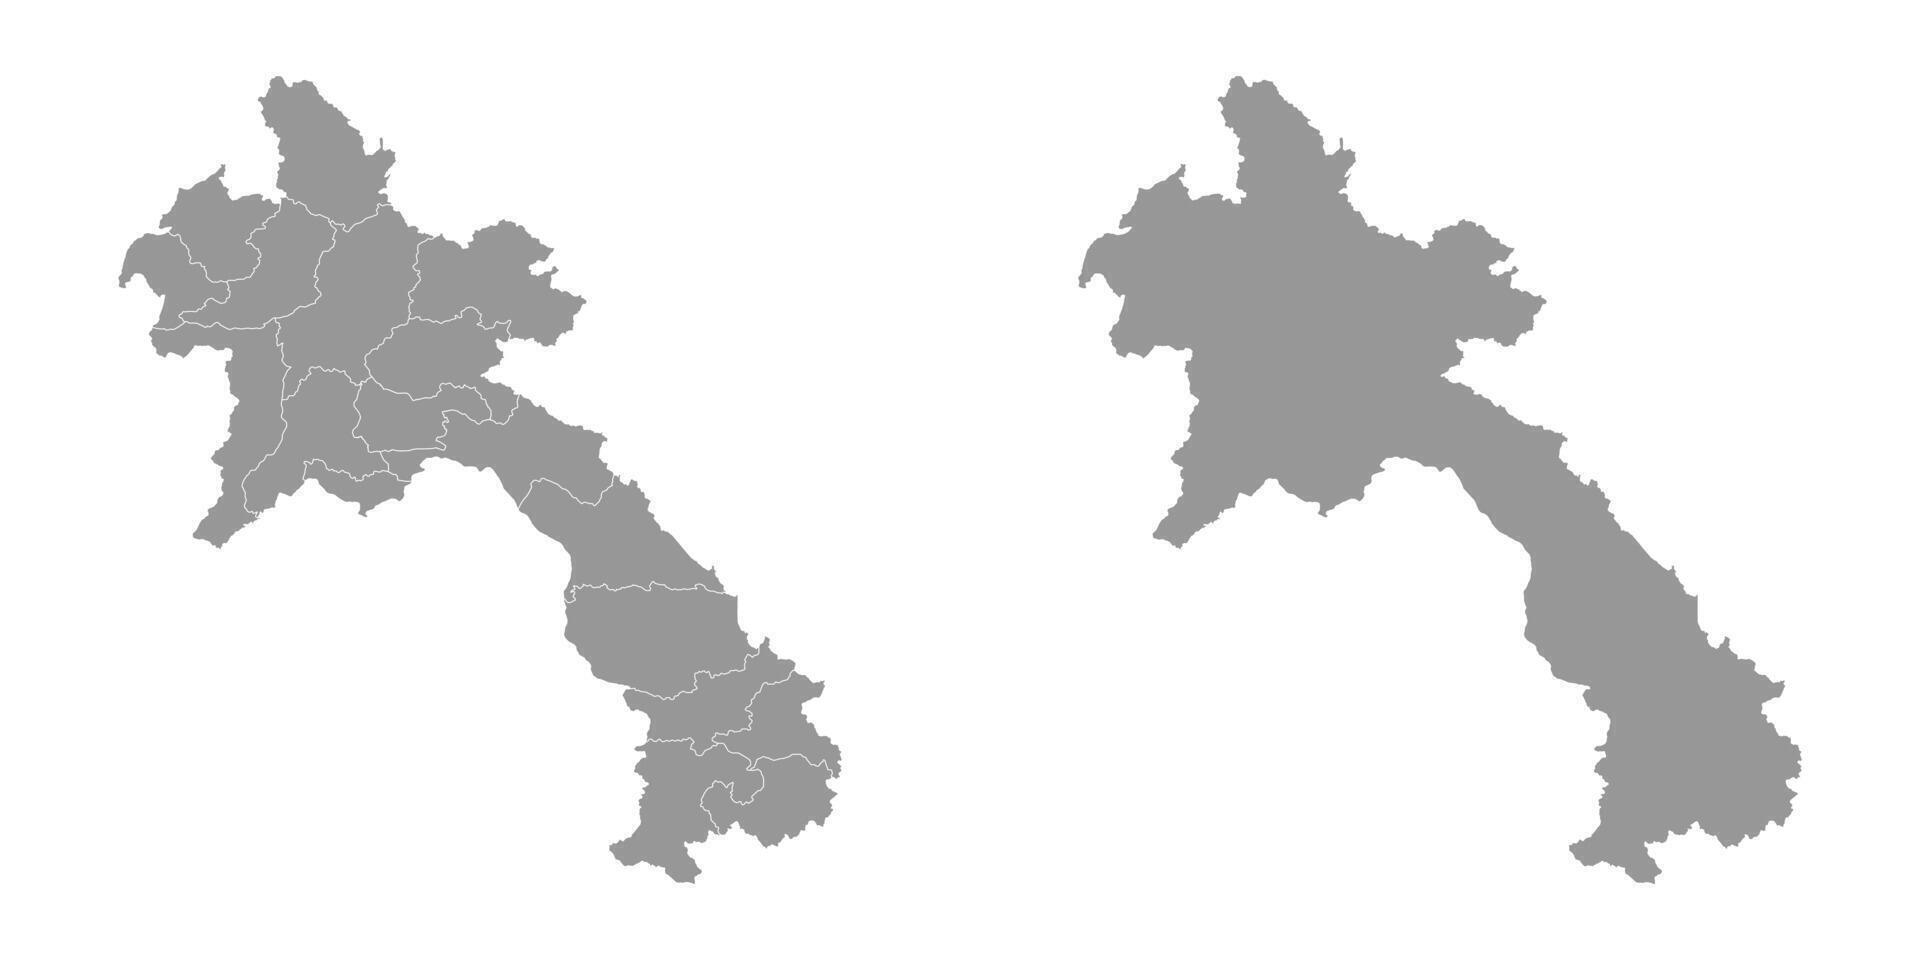 lao popoli democratico repubblica carta geografica con amministrativo divisioni. vettore illustrazione.